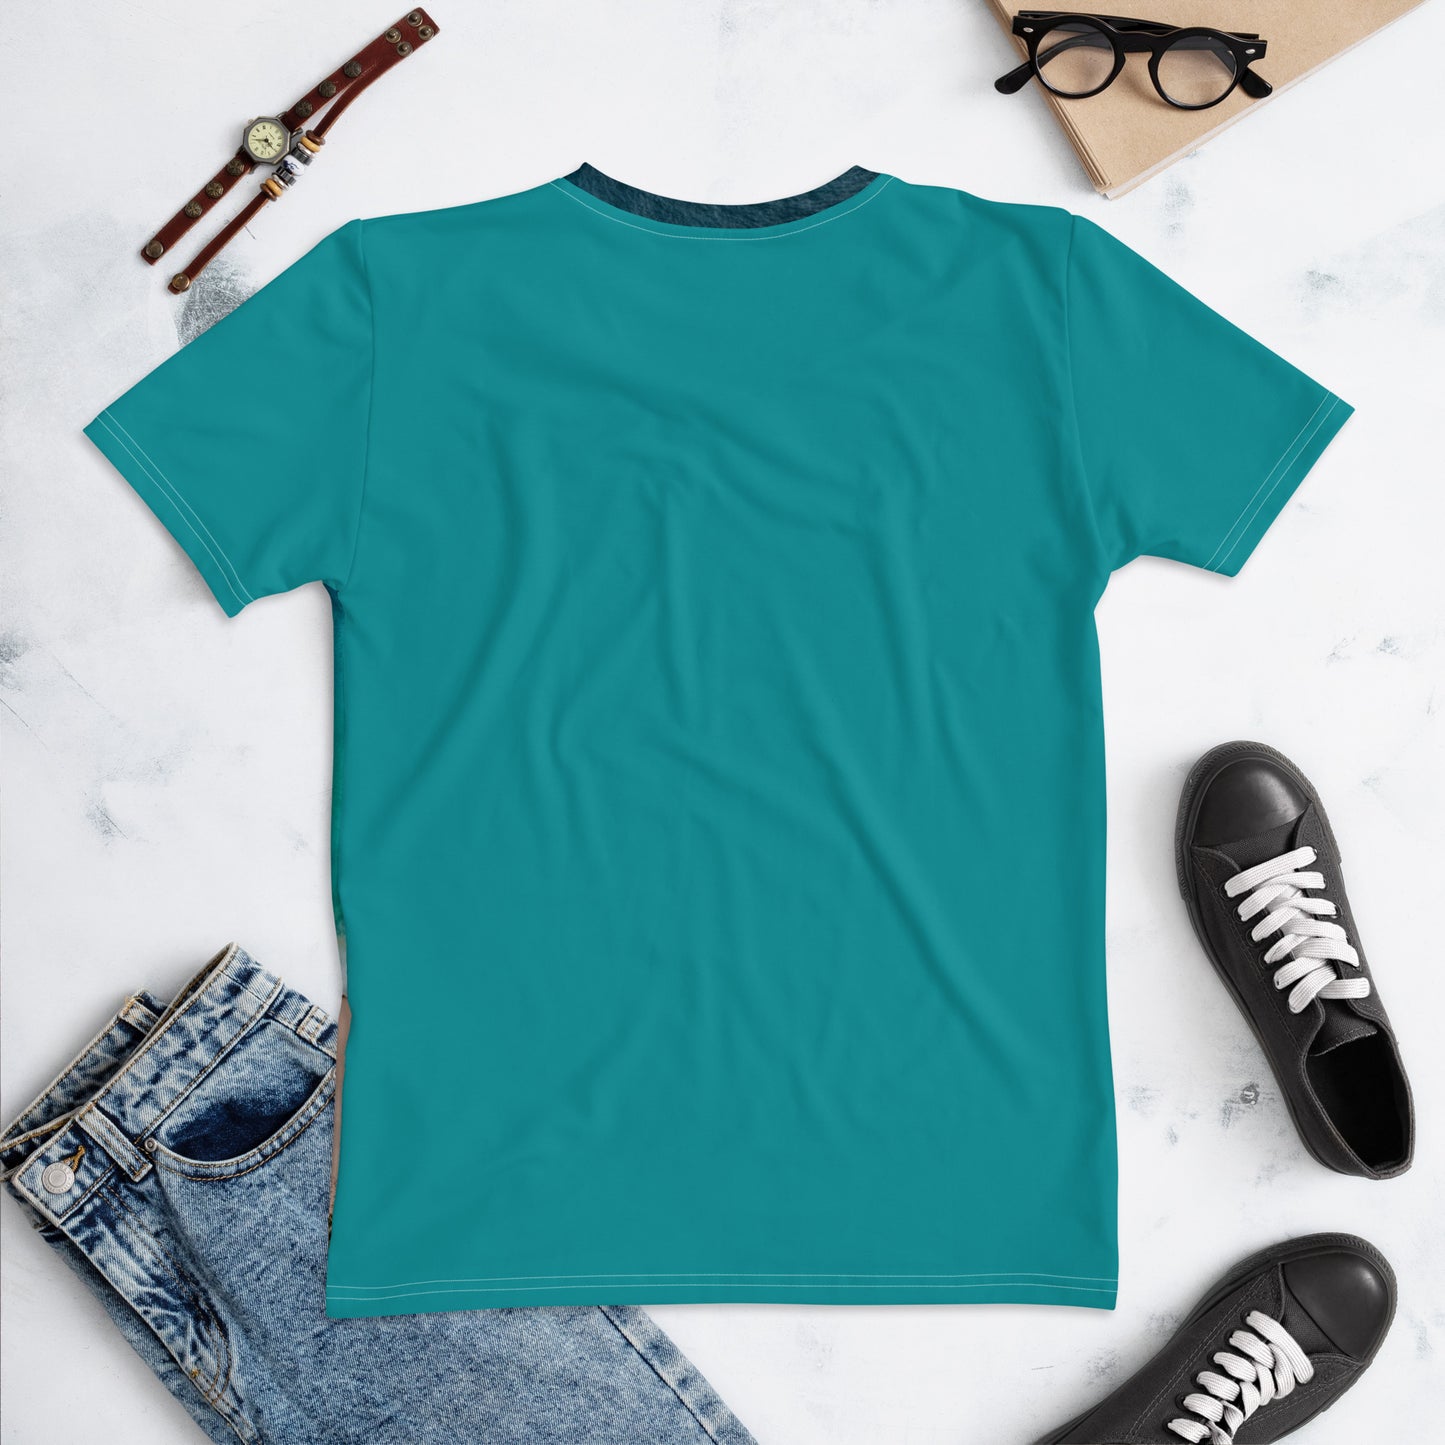 Damen-T-Shirt - Bin auf Weltreise